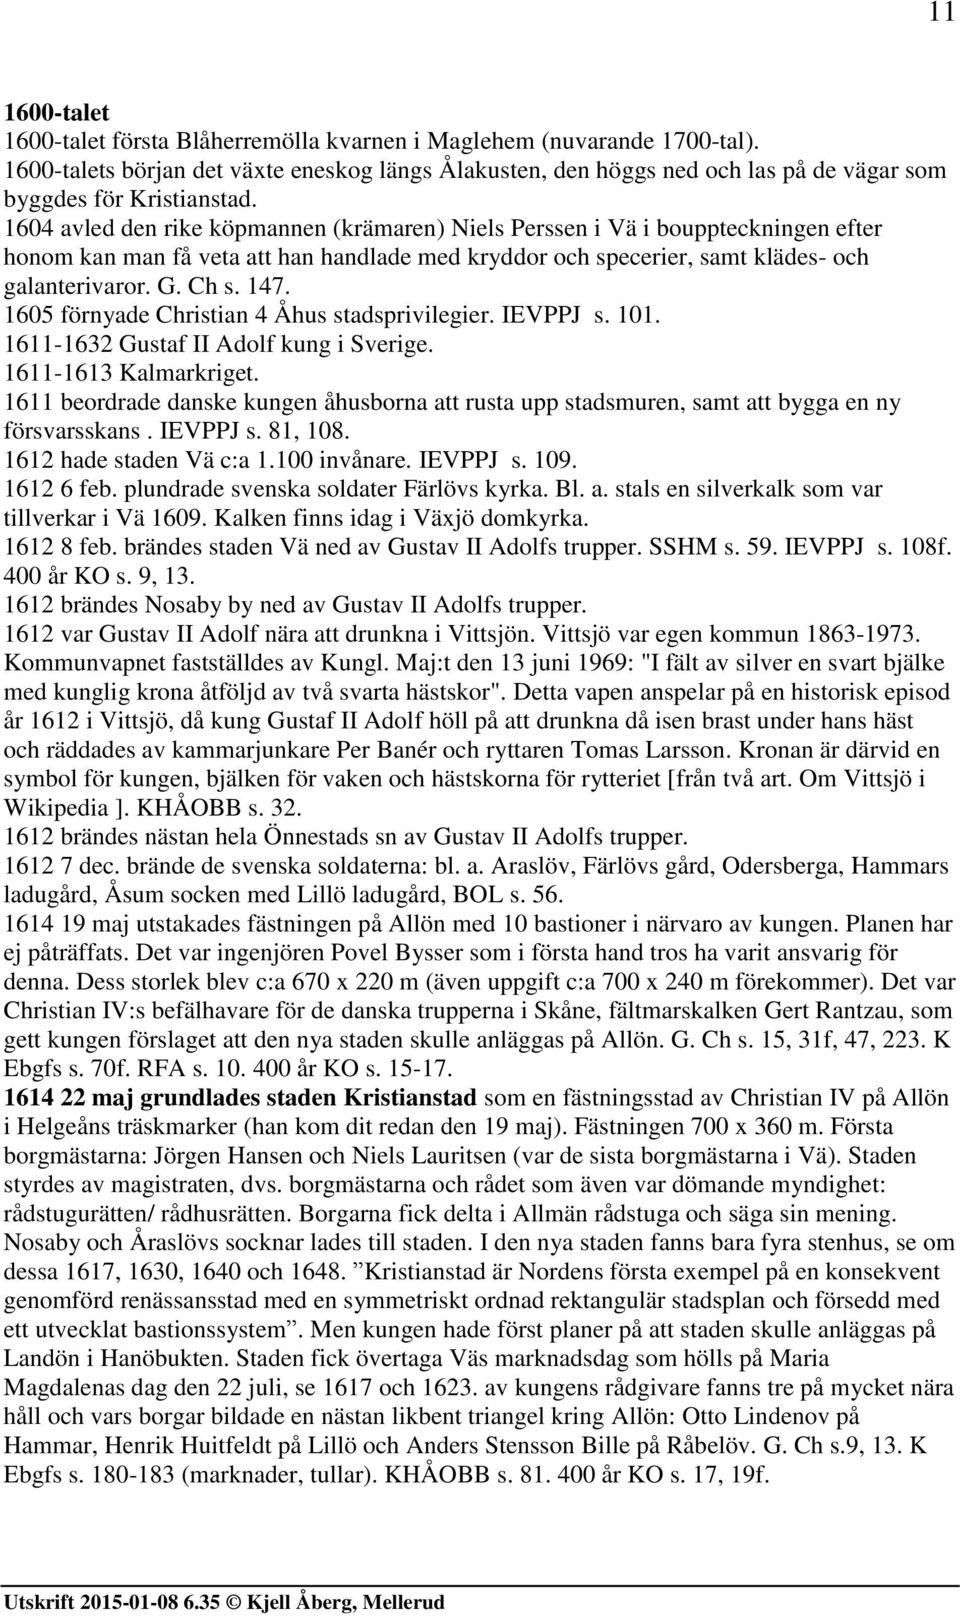 1604 avled den rike köpmannen (krämaren) Niels Perssen i Vä i bouppteckningen efter honom kan man få veta att han handlade med kryddor och specerier, samt klädes- och galanterivaror. G. Ch s. 147.